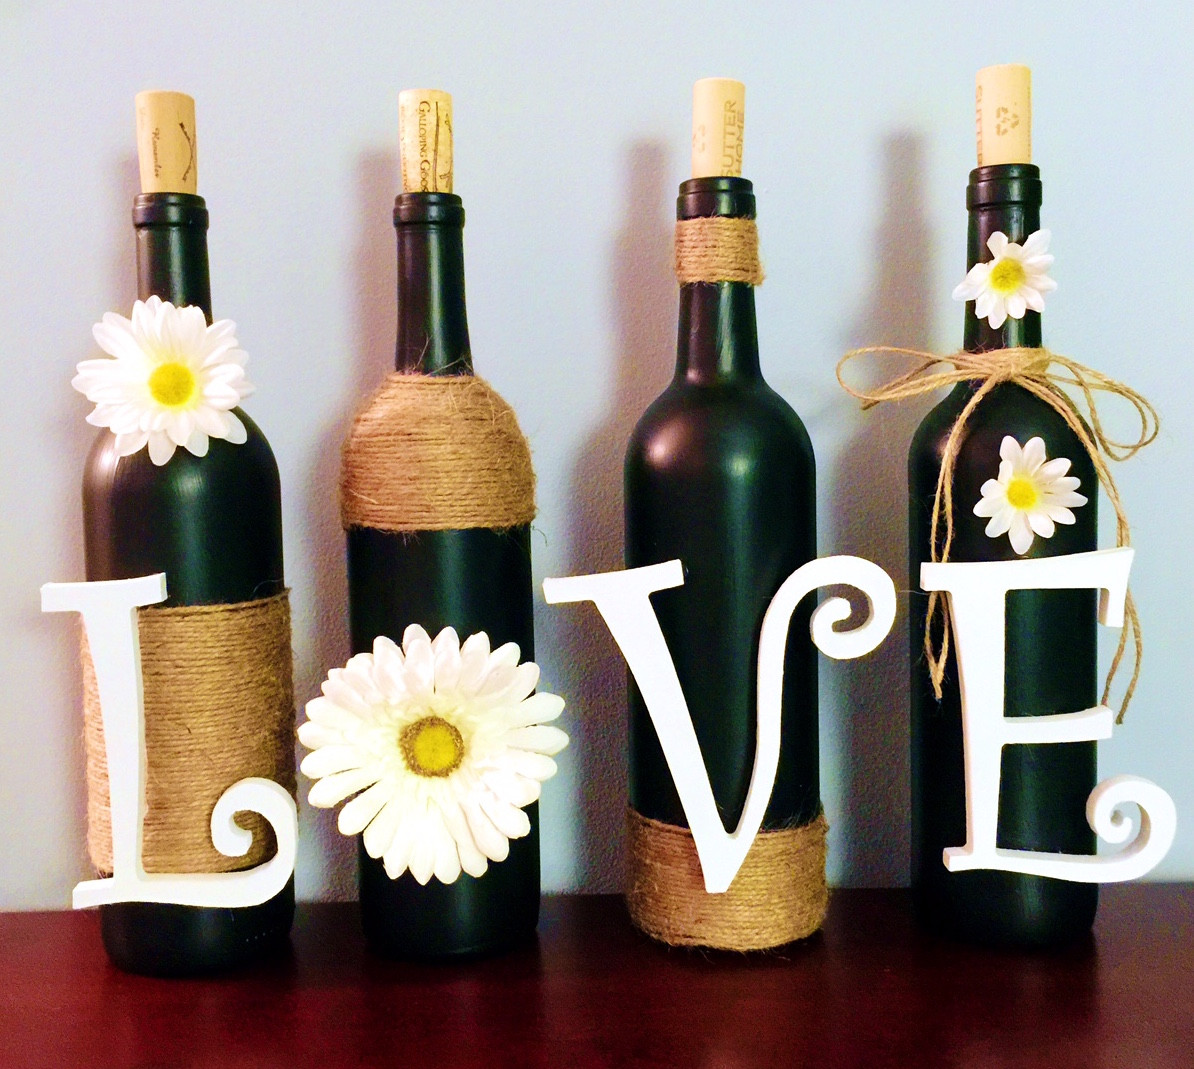 Best ideas about DIY Wine Bottle Decoration
. Save or Pin Dear Paradise DIY Wine Bottle Decoration Now.